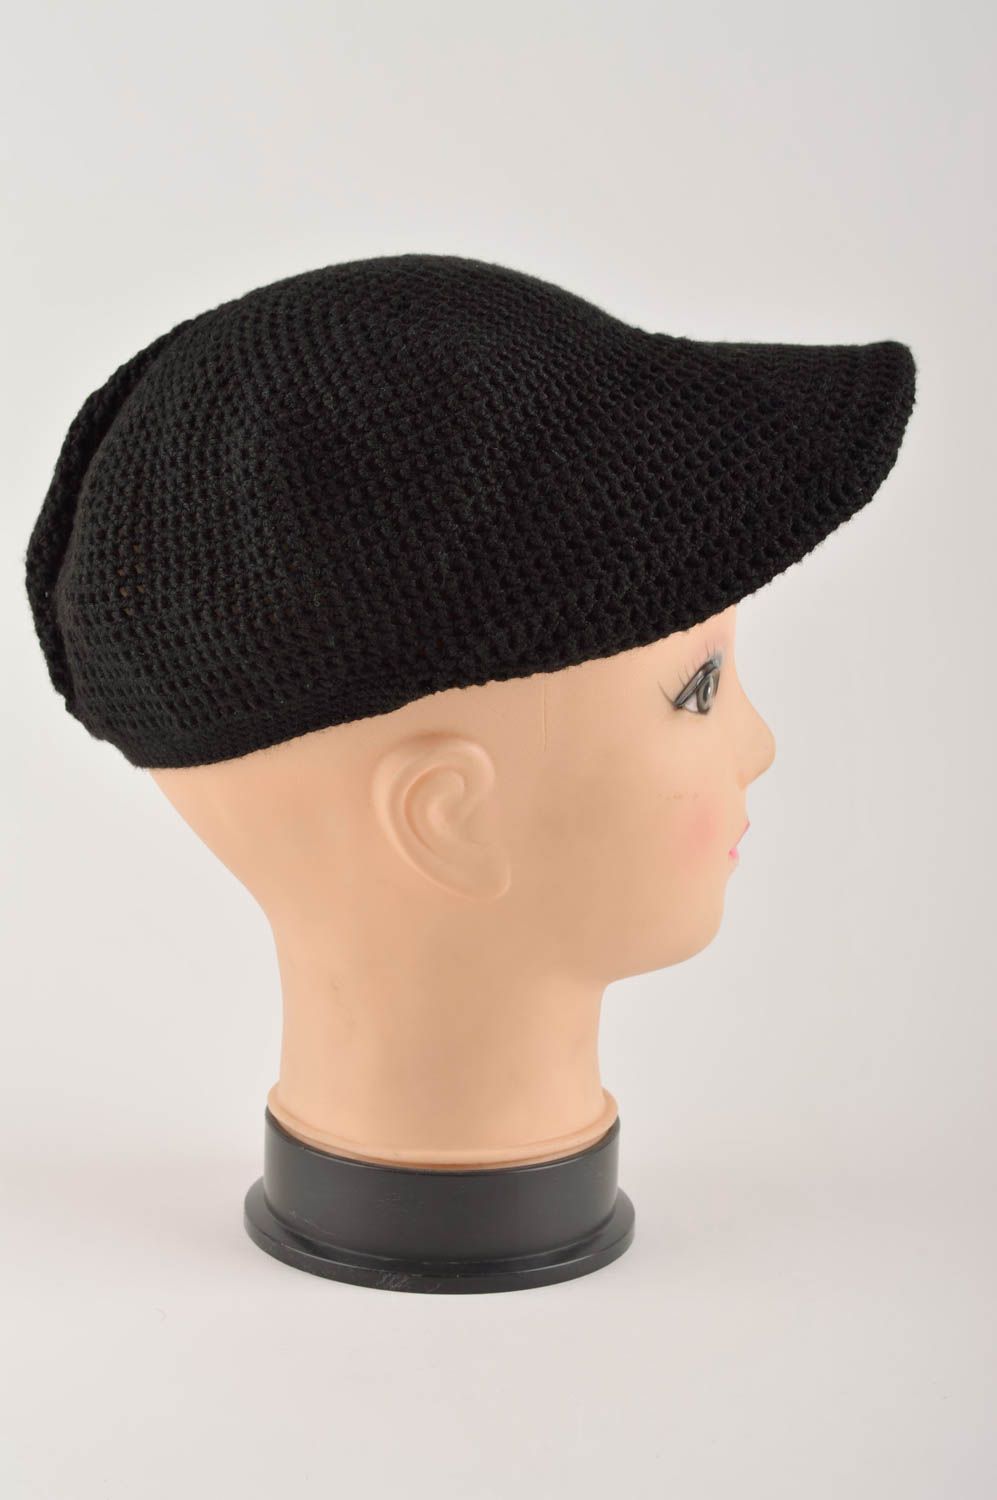 Вязаная кепка ручной работы вязаная шапка черная стильная зимняя шапка фото 4